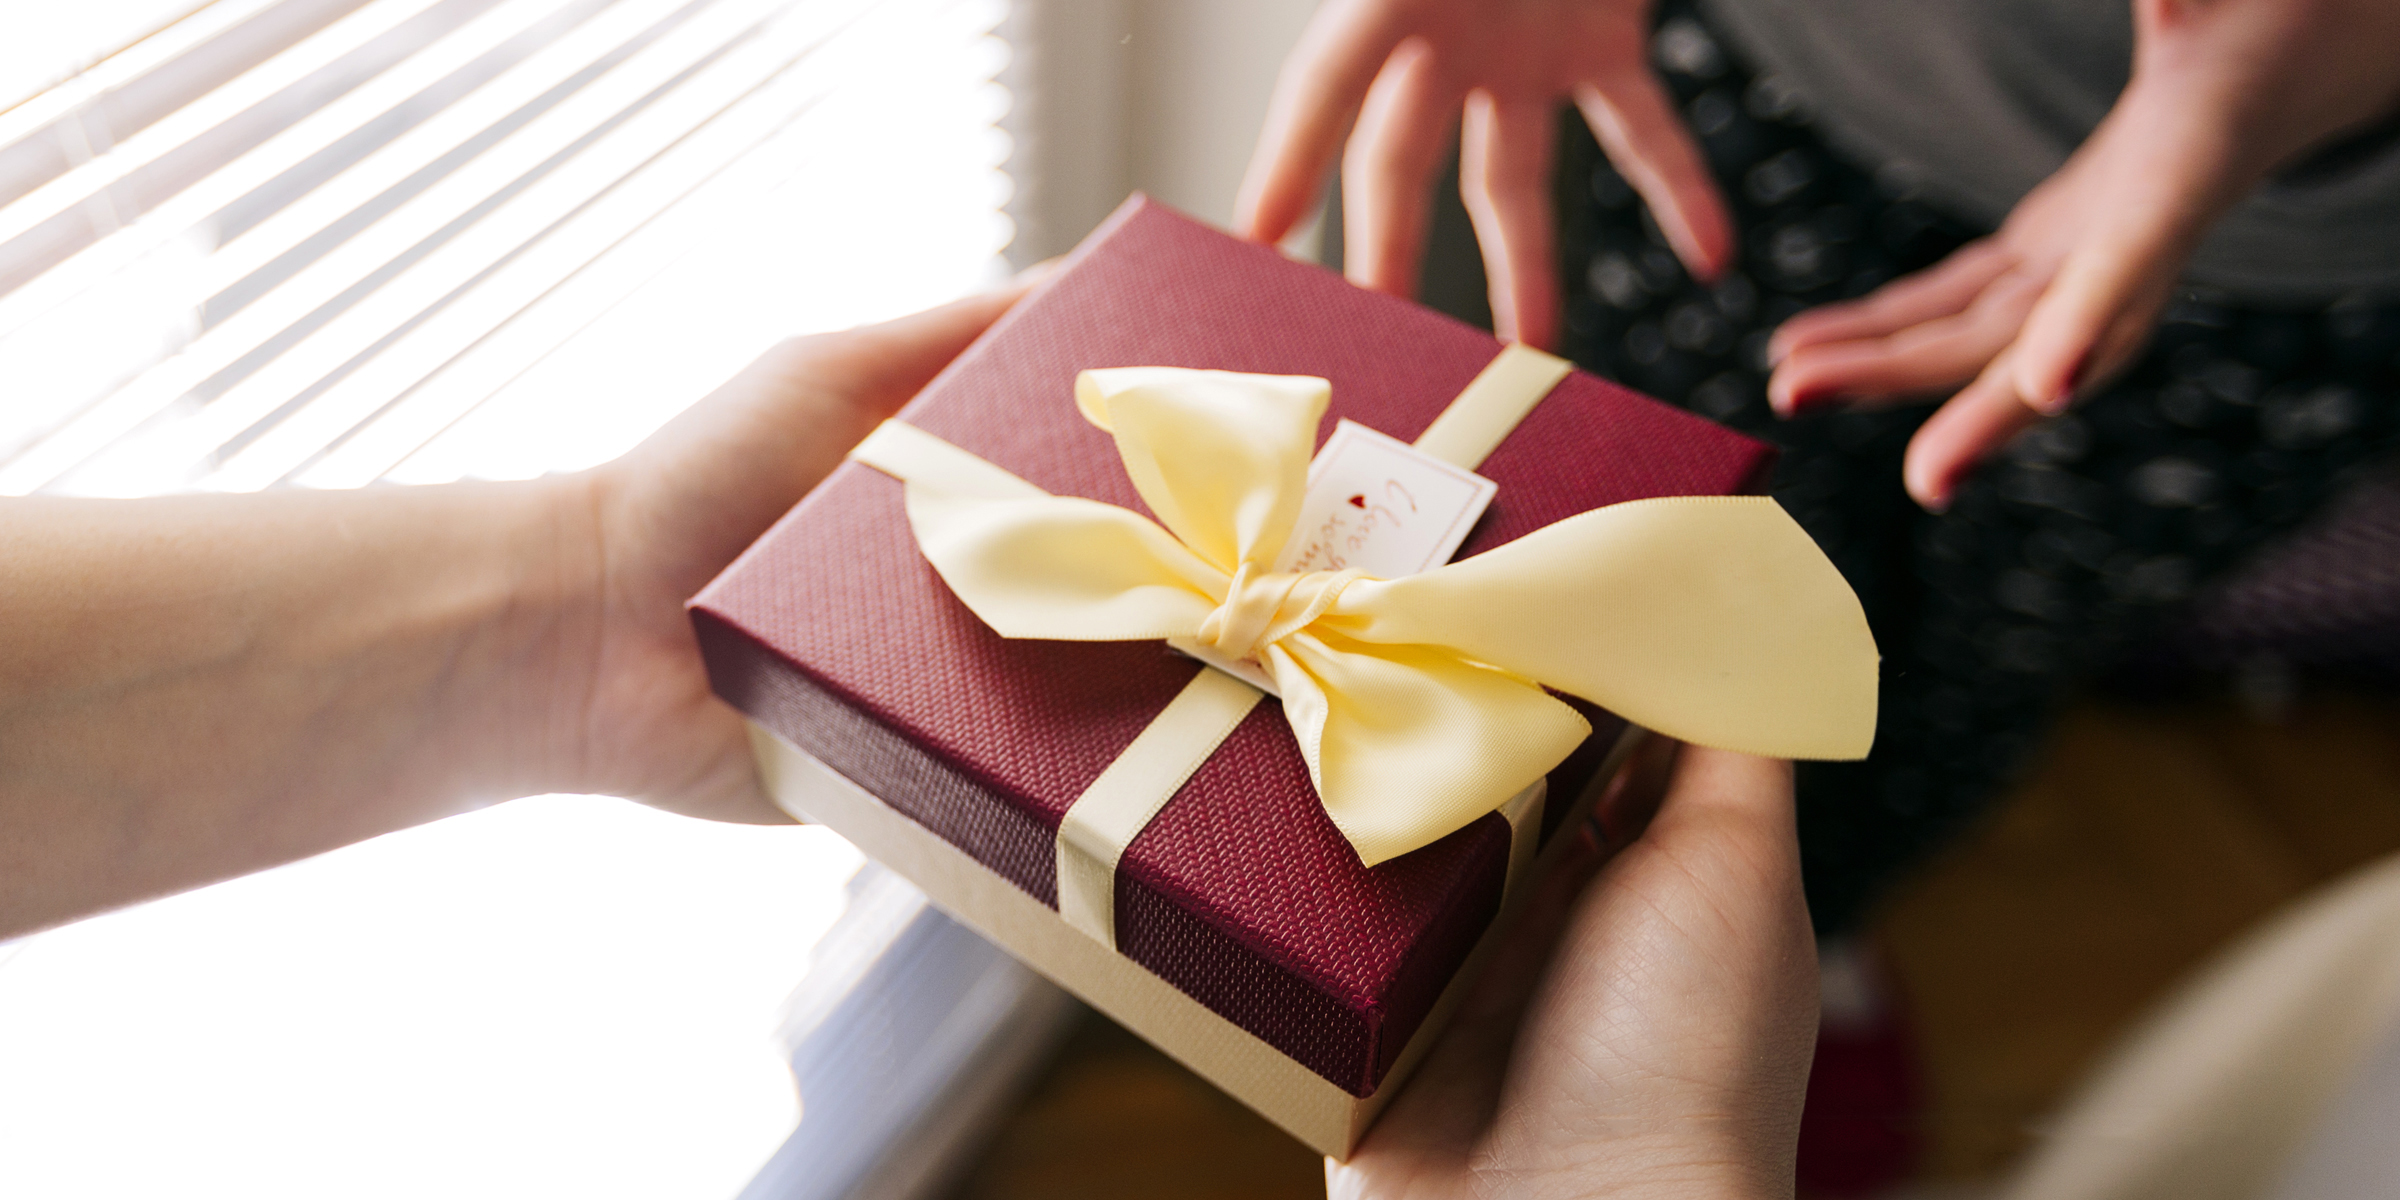 Ein Mann schenkt einer Frau ein Geschenk | Quelle: Shutterstock